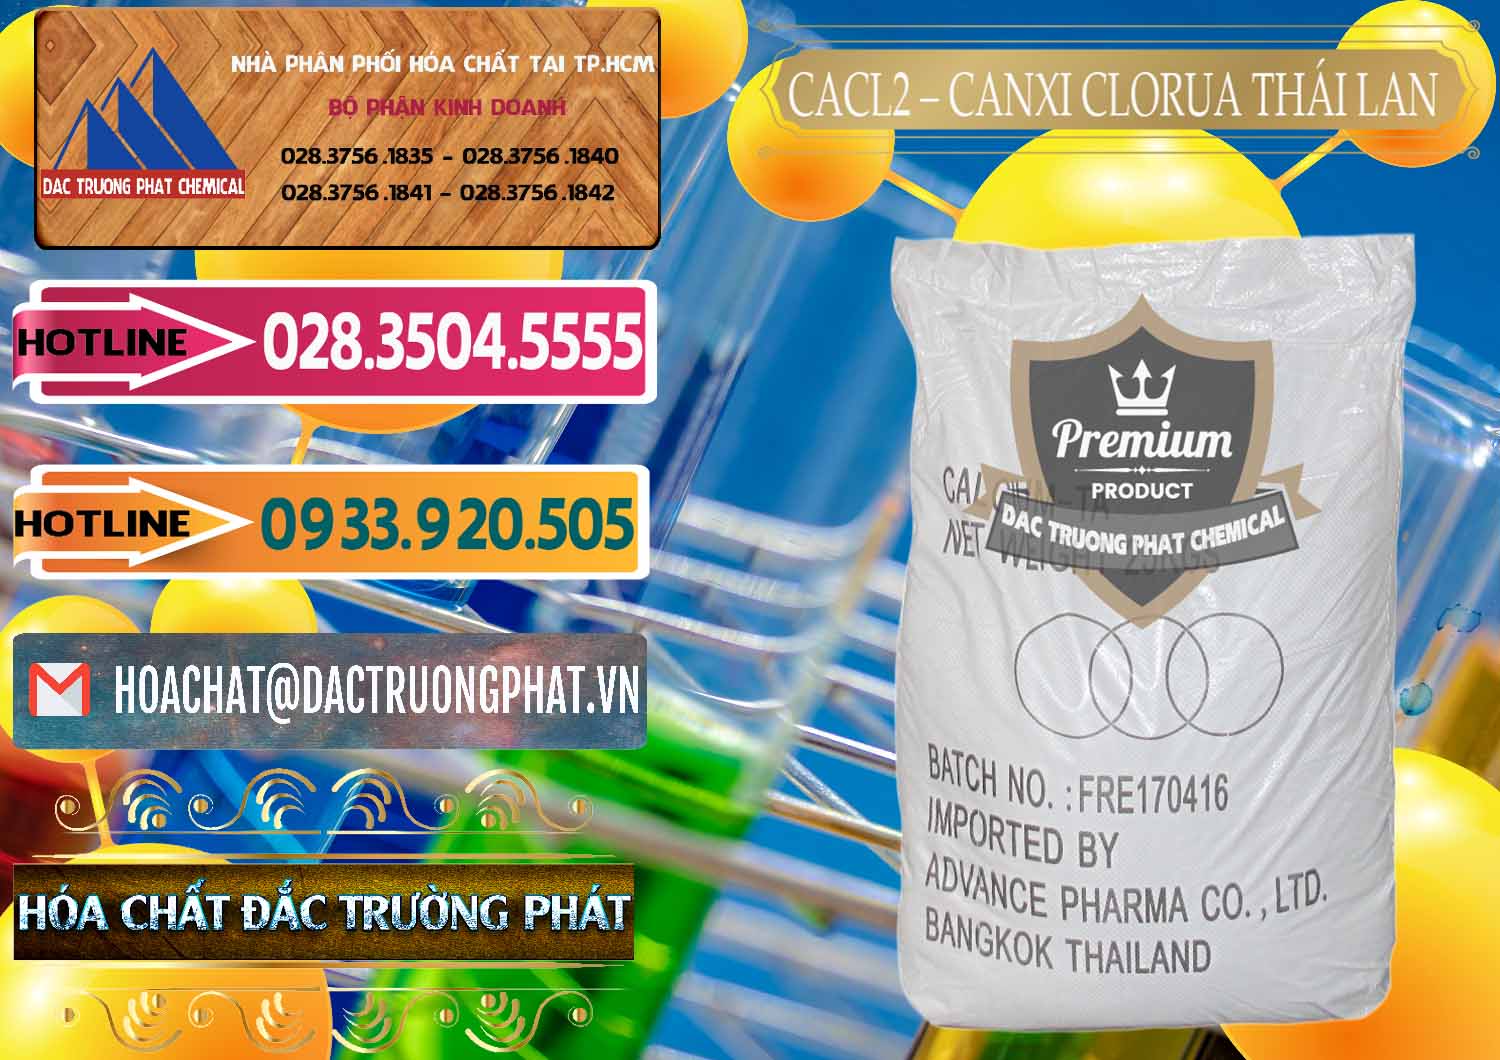 Nơi chuyên bán & phân phối CaCl2 – Canxi Clorua 96% Thái Lan - 0042 - Chuyên cung cấp & nhập khẩu hóa chất tại TP.HCM - dactruongphat.vn